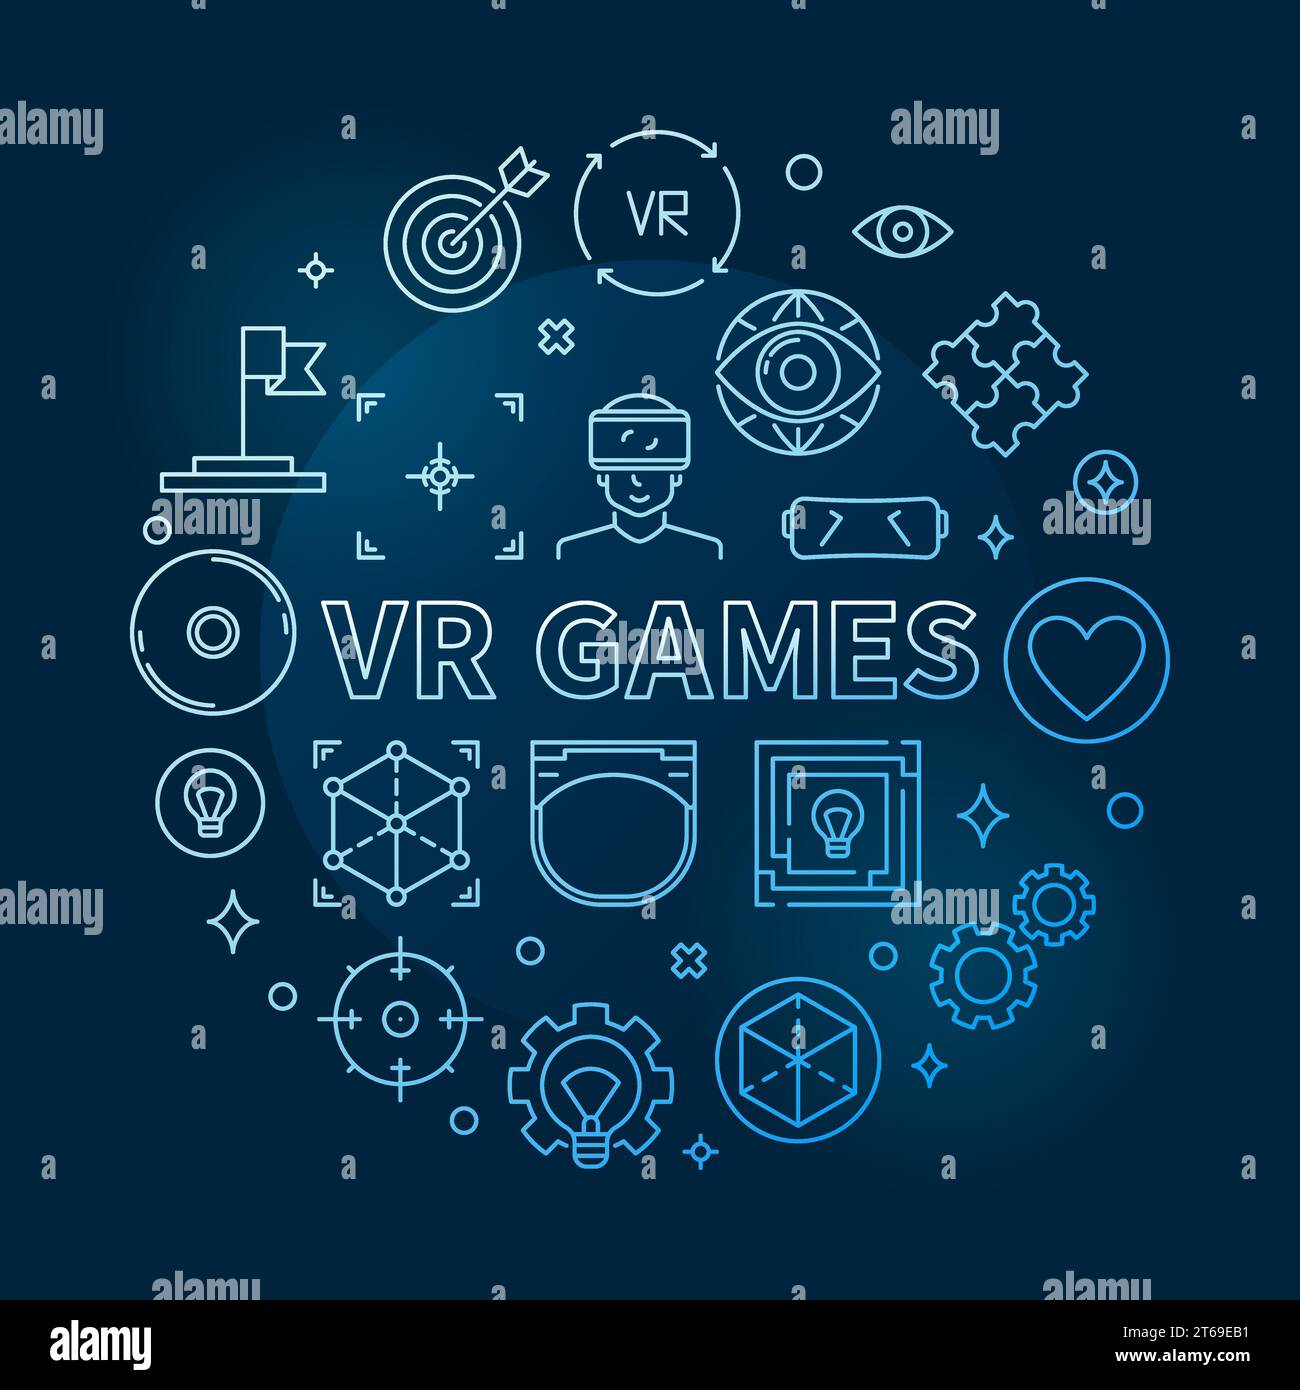 Vector VR Games concept rond illustration de contour bleu sur fond sombre Illustration de Vecteur